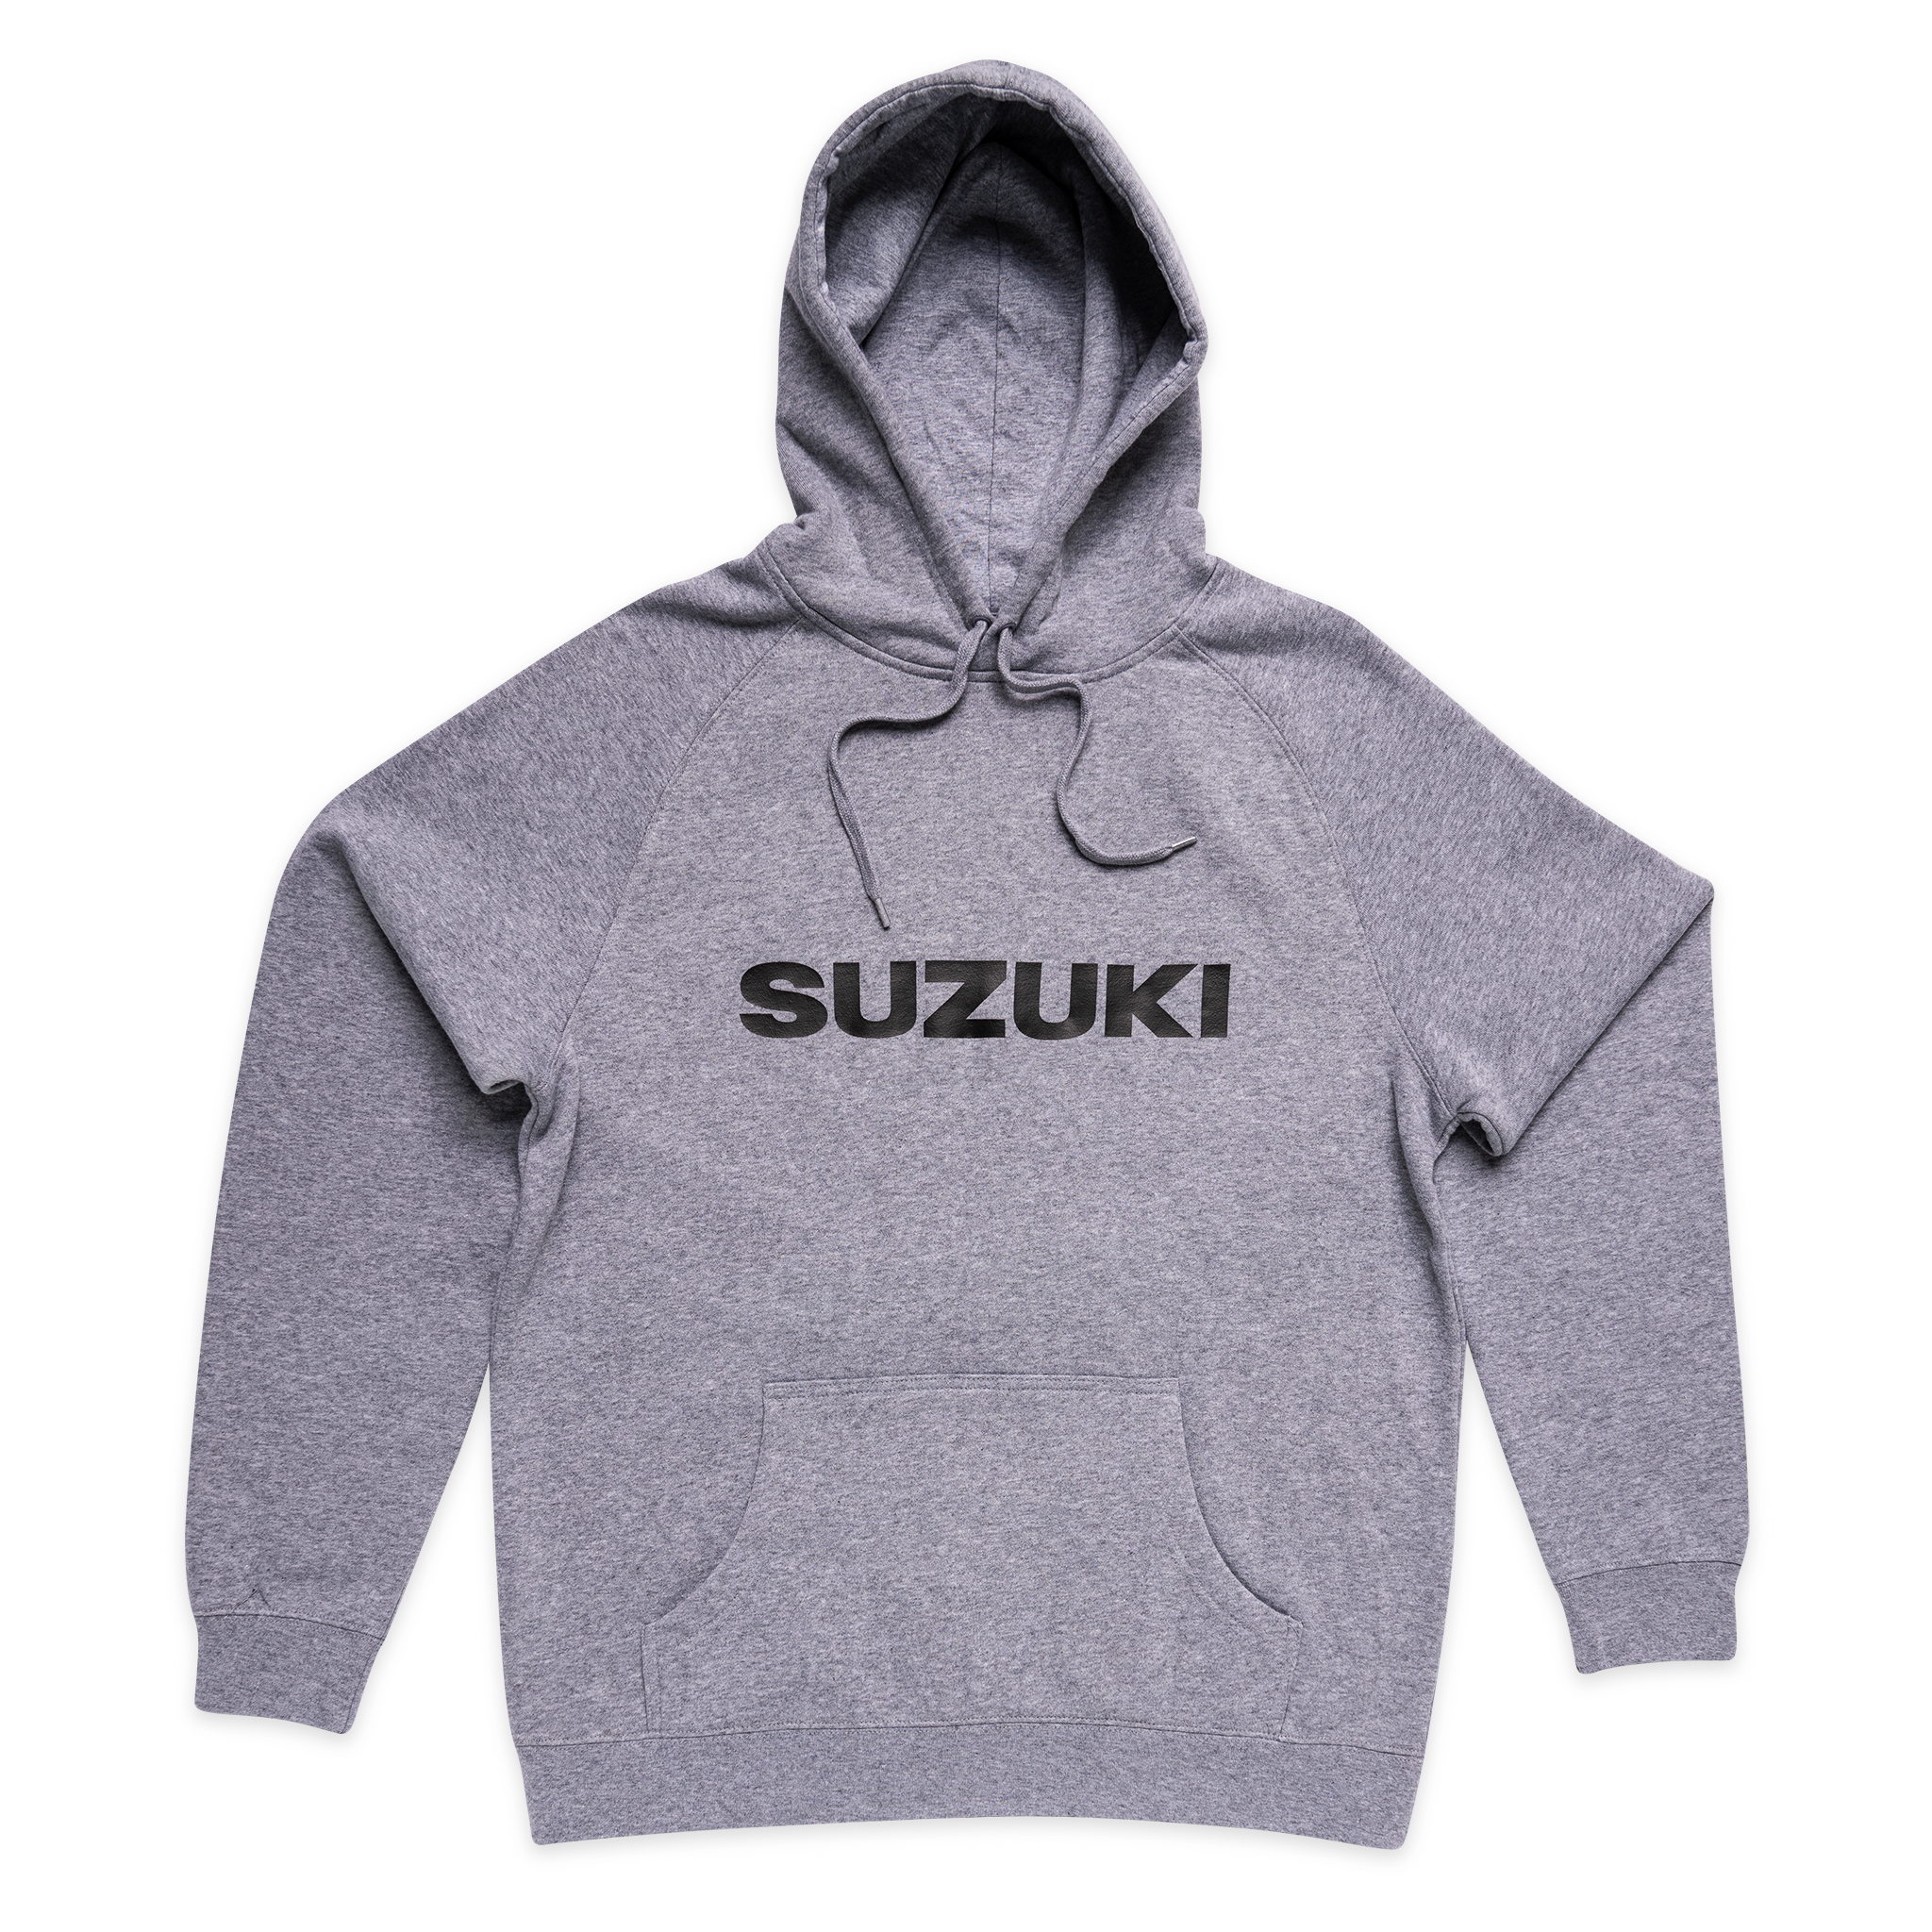 Suzuki Hoodie